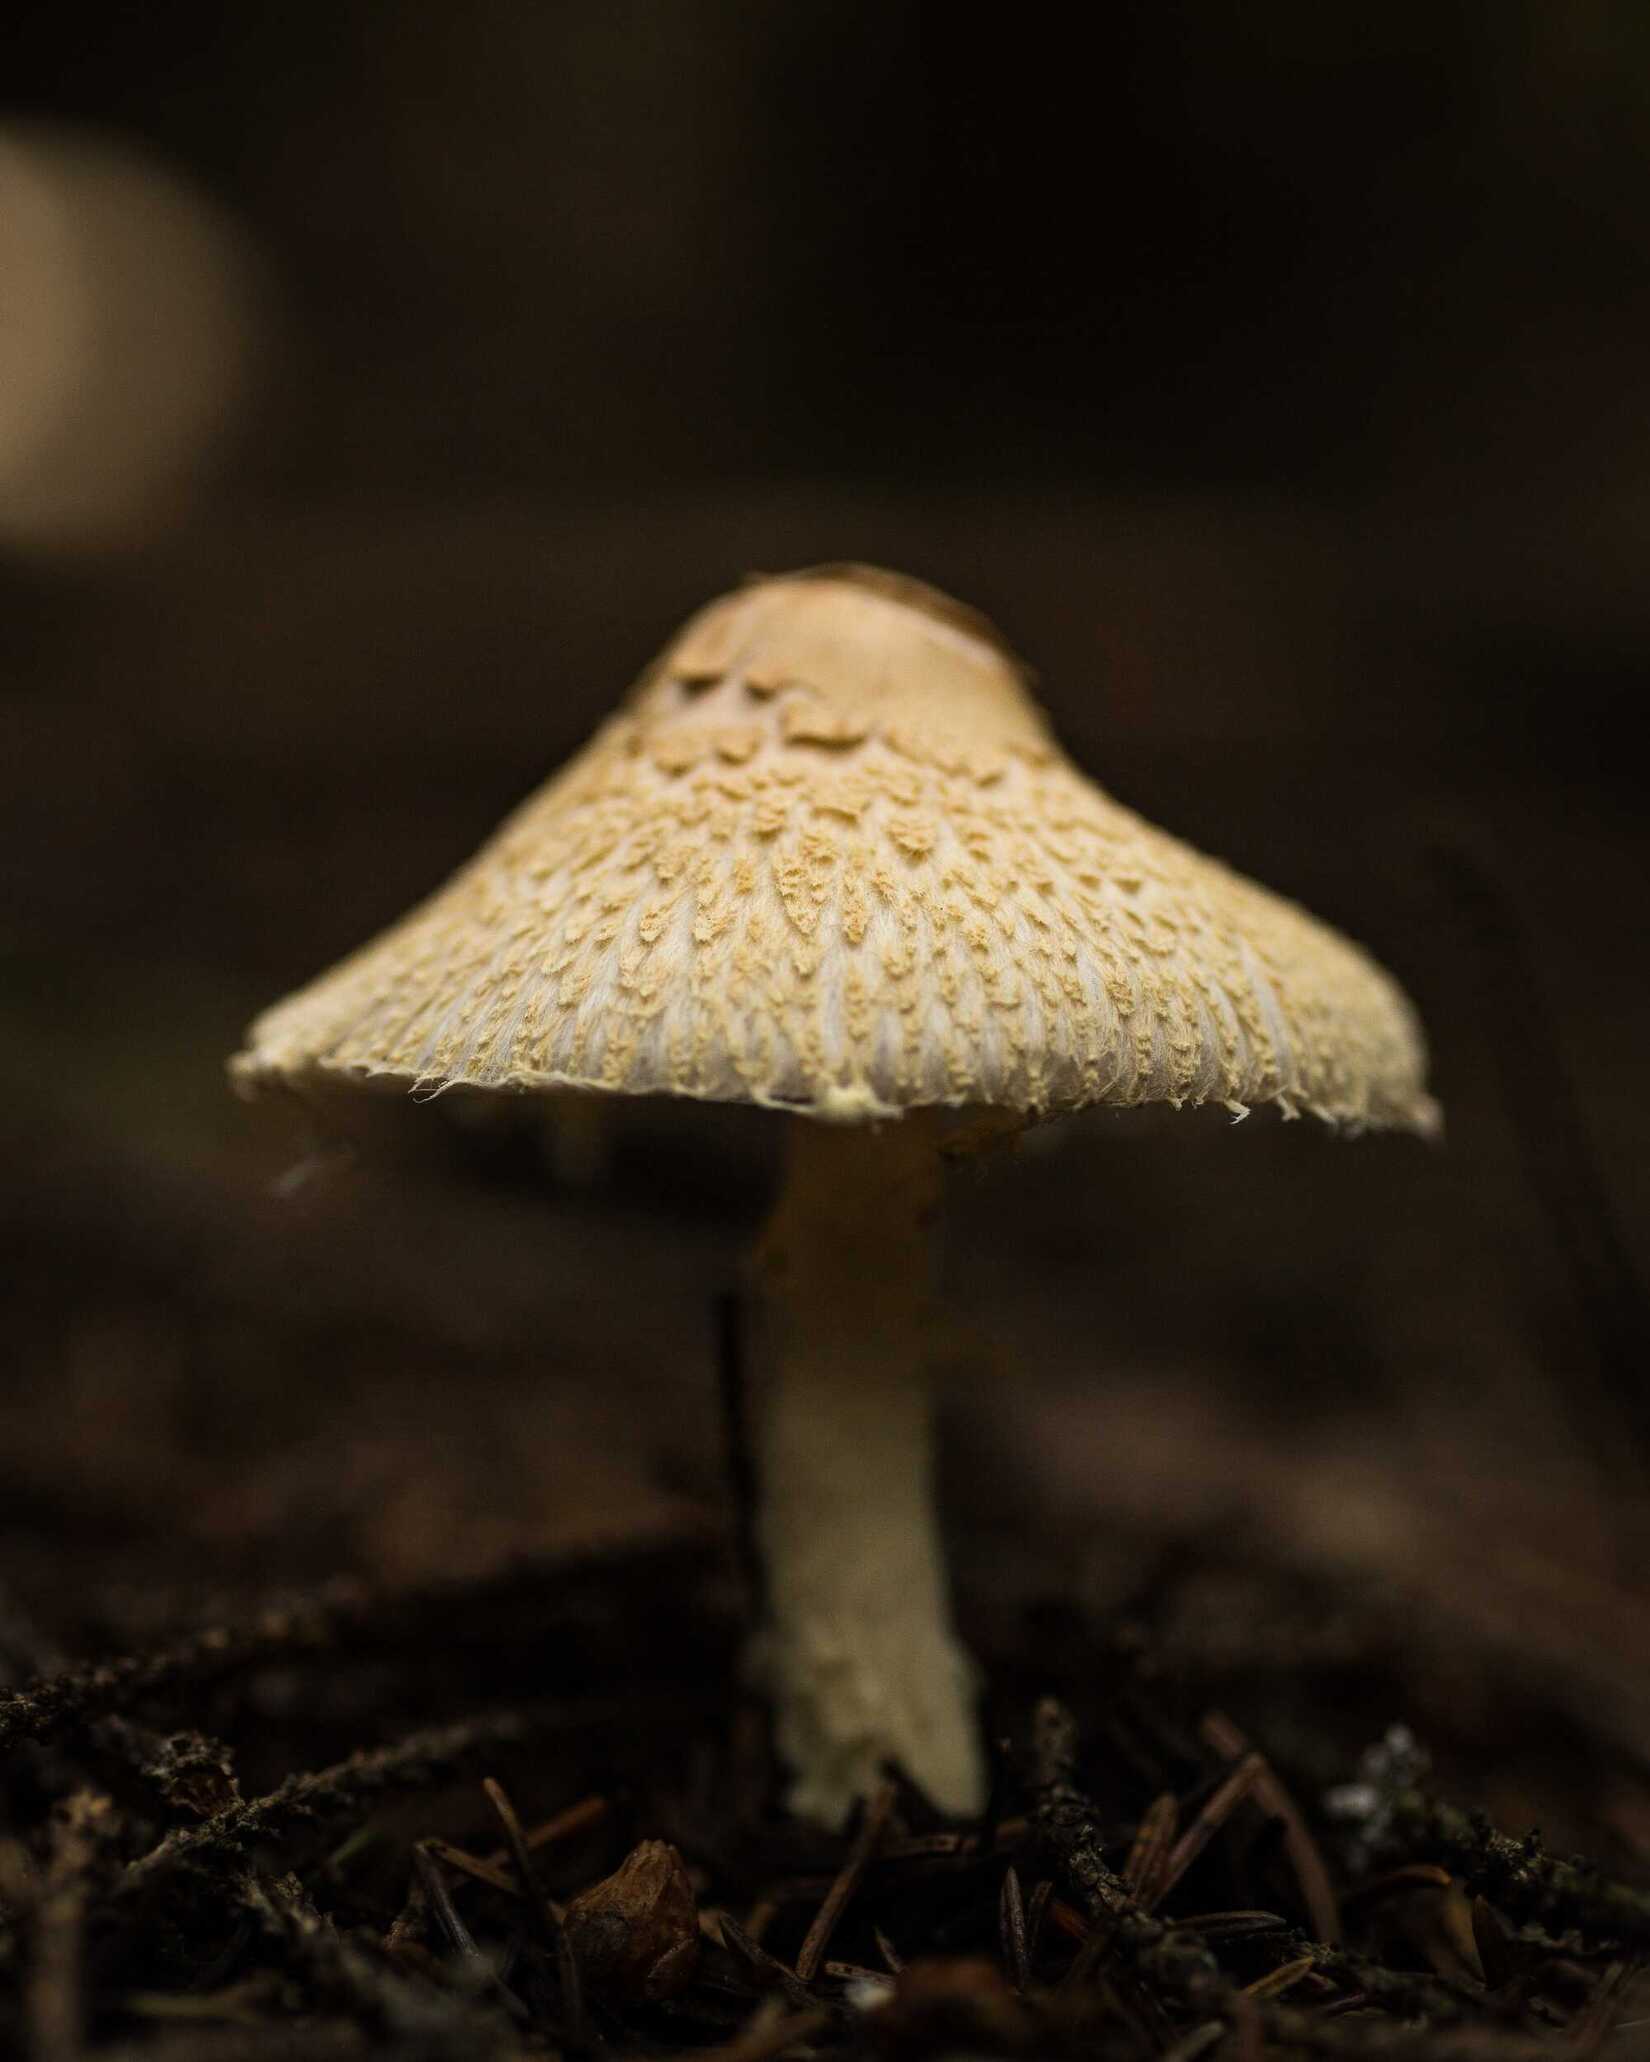 Het wonder van mycelium: Een duurzame revolutie in materialen